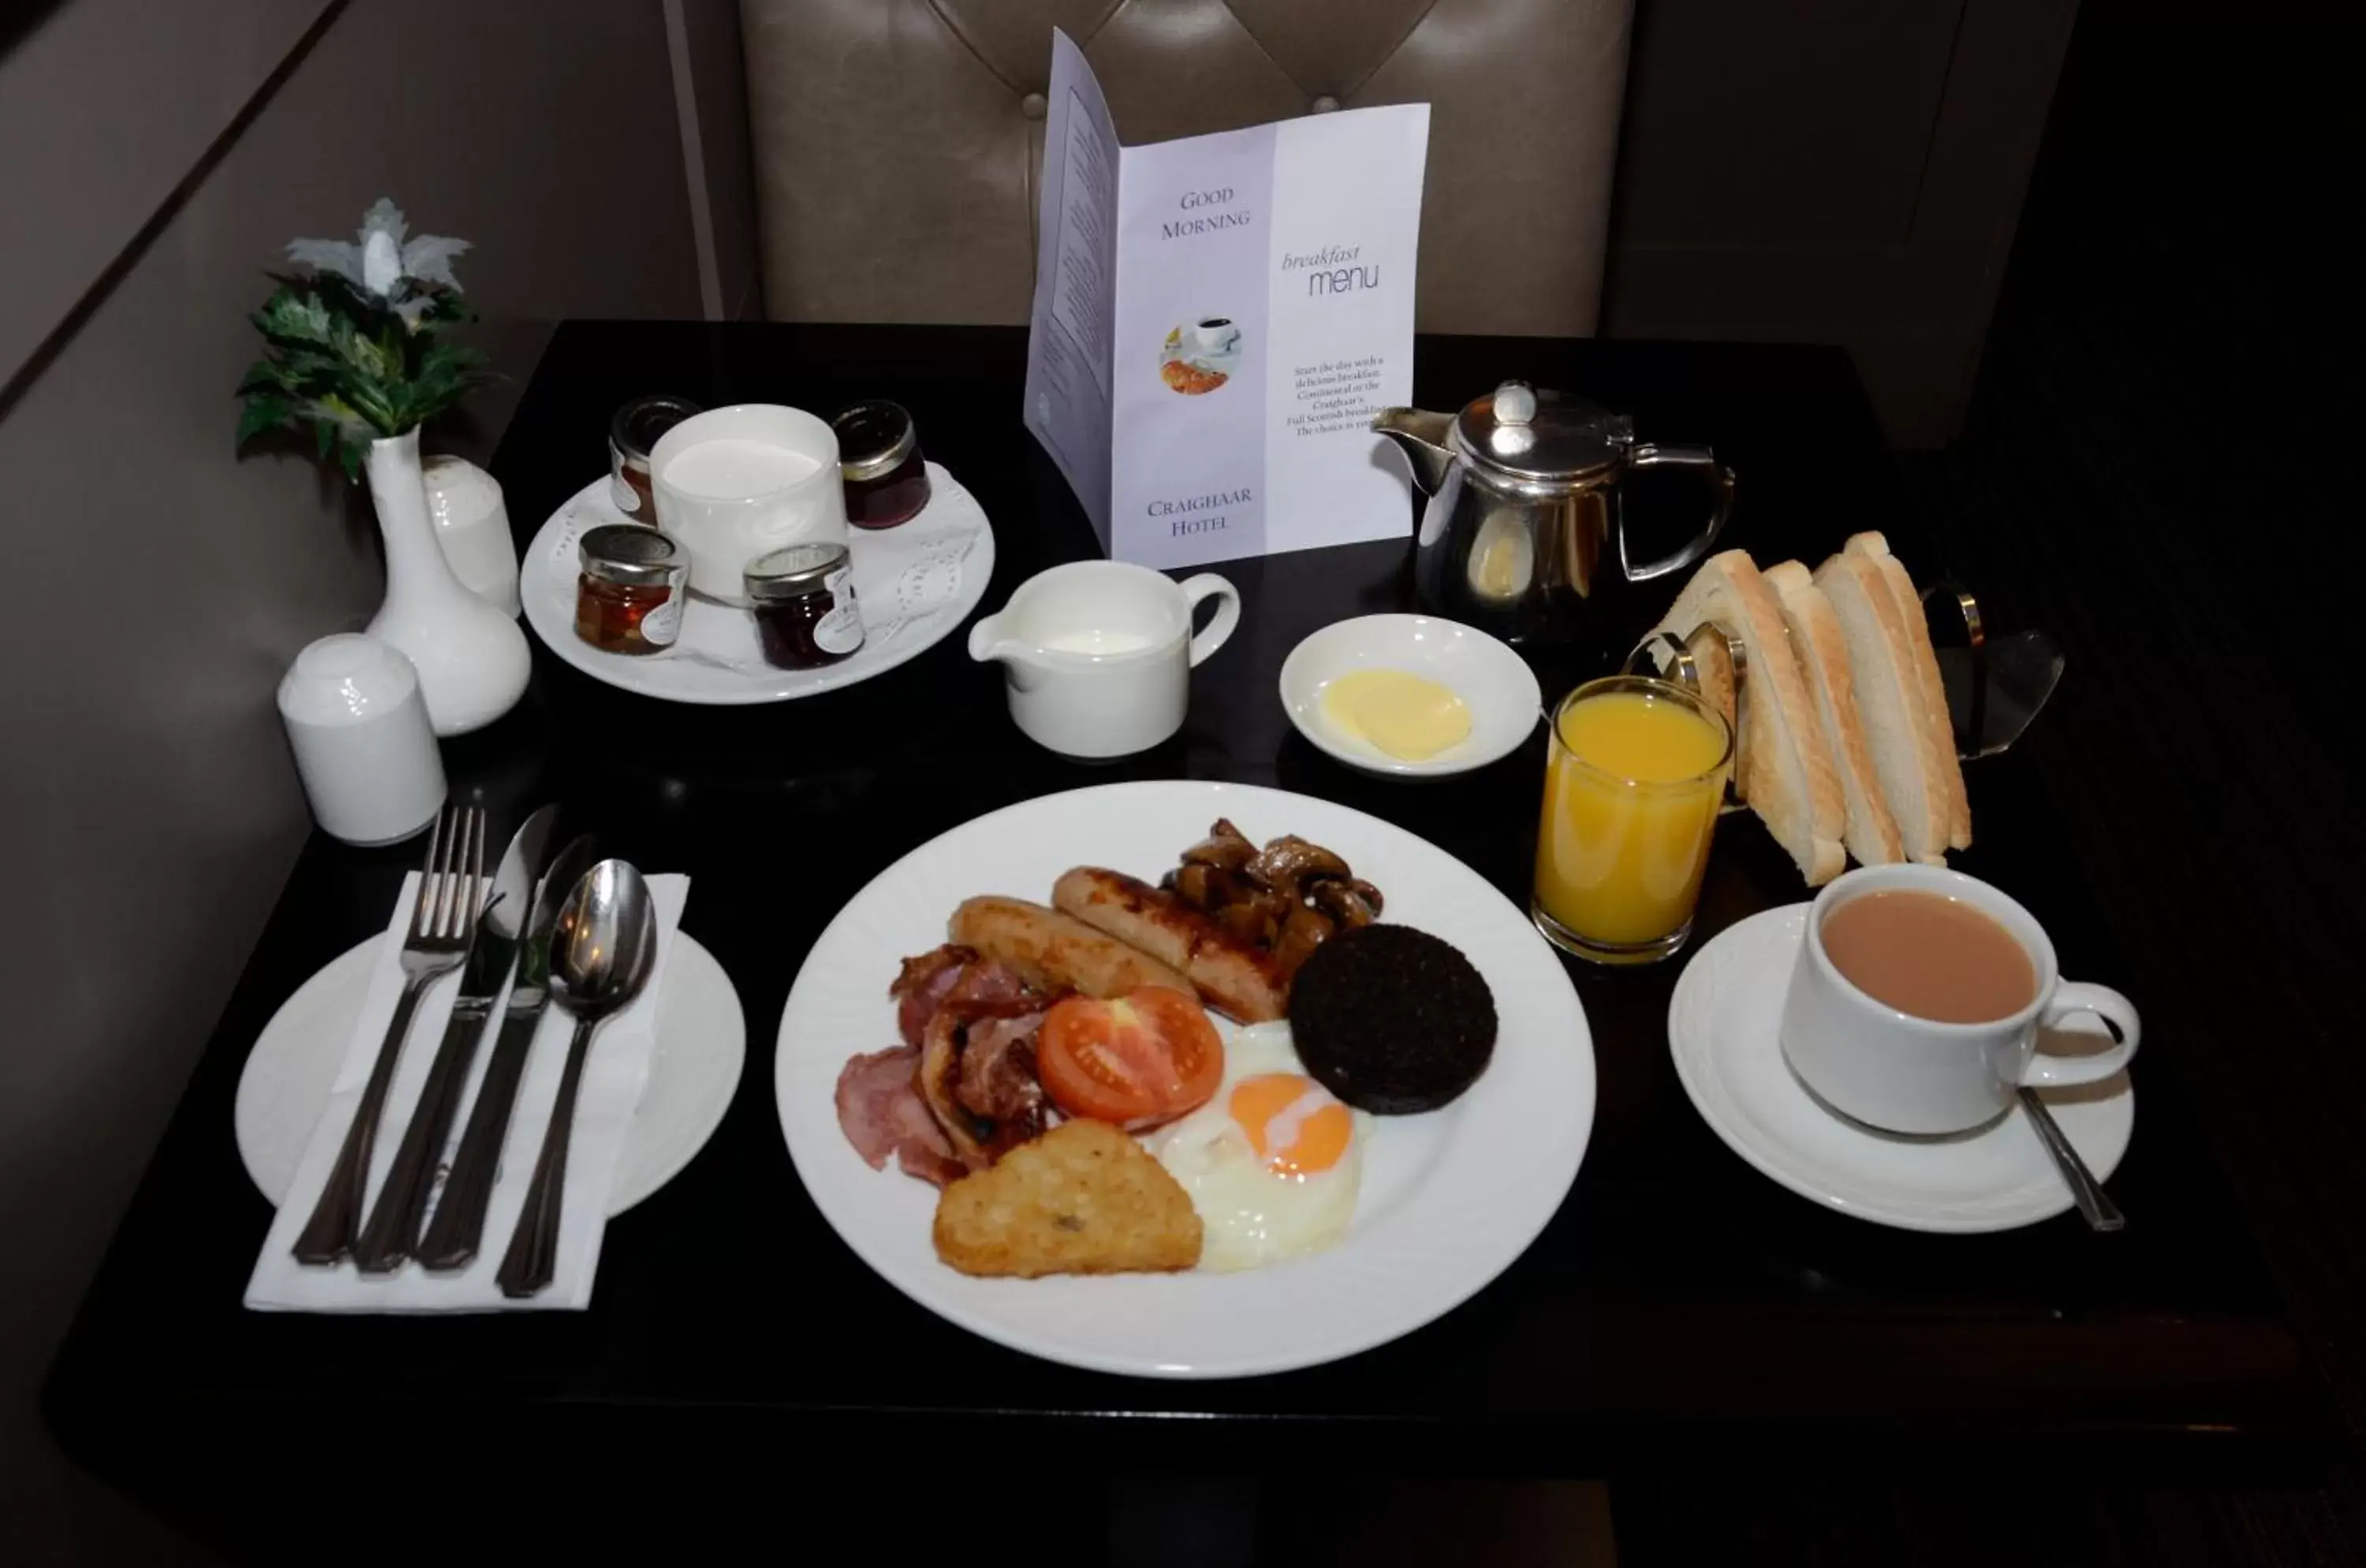 Breakfast in The Craighaar Hotel